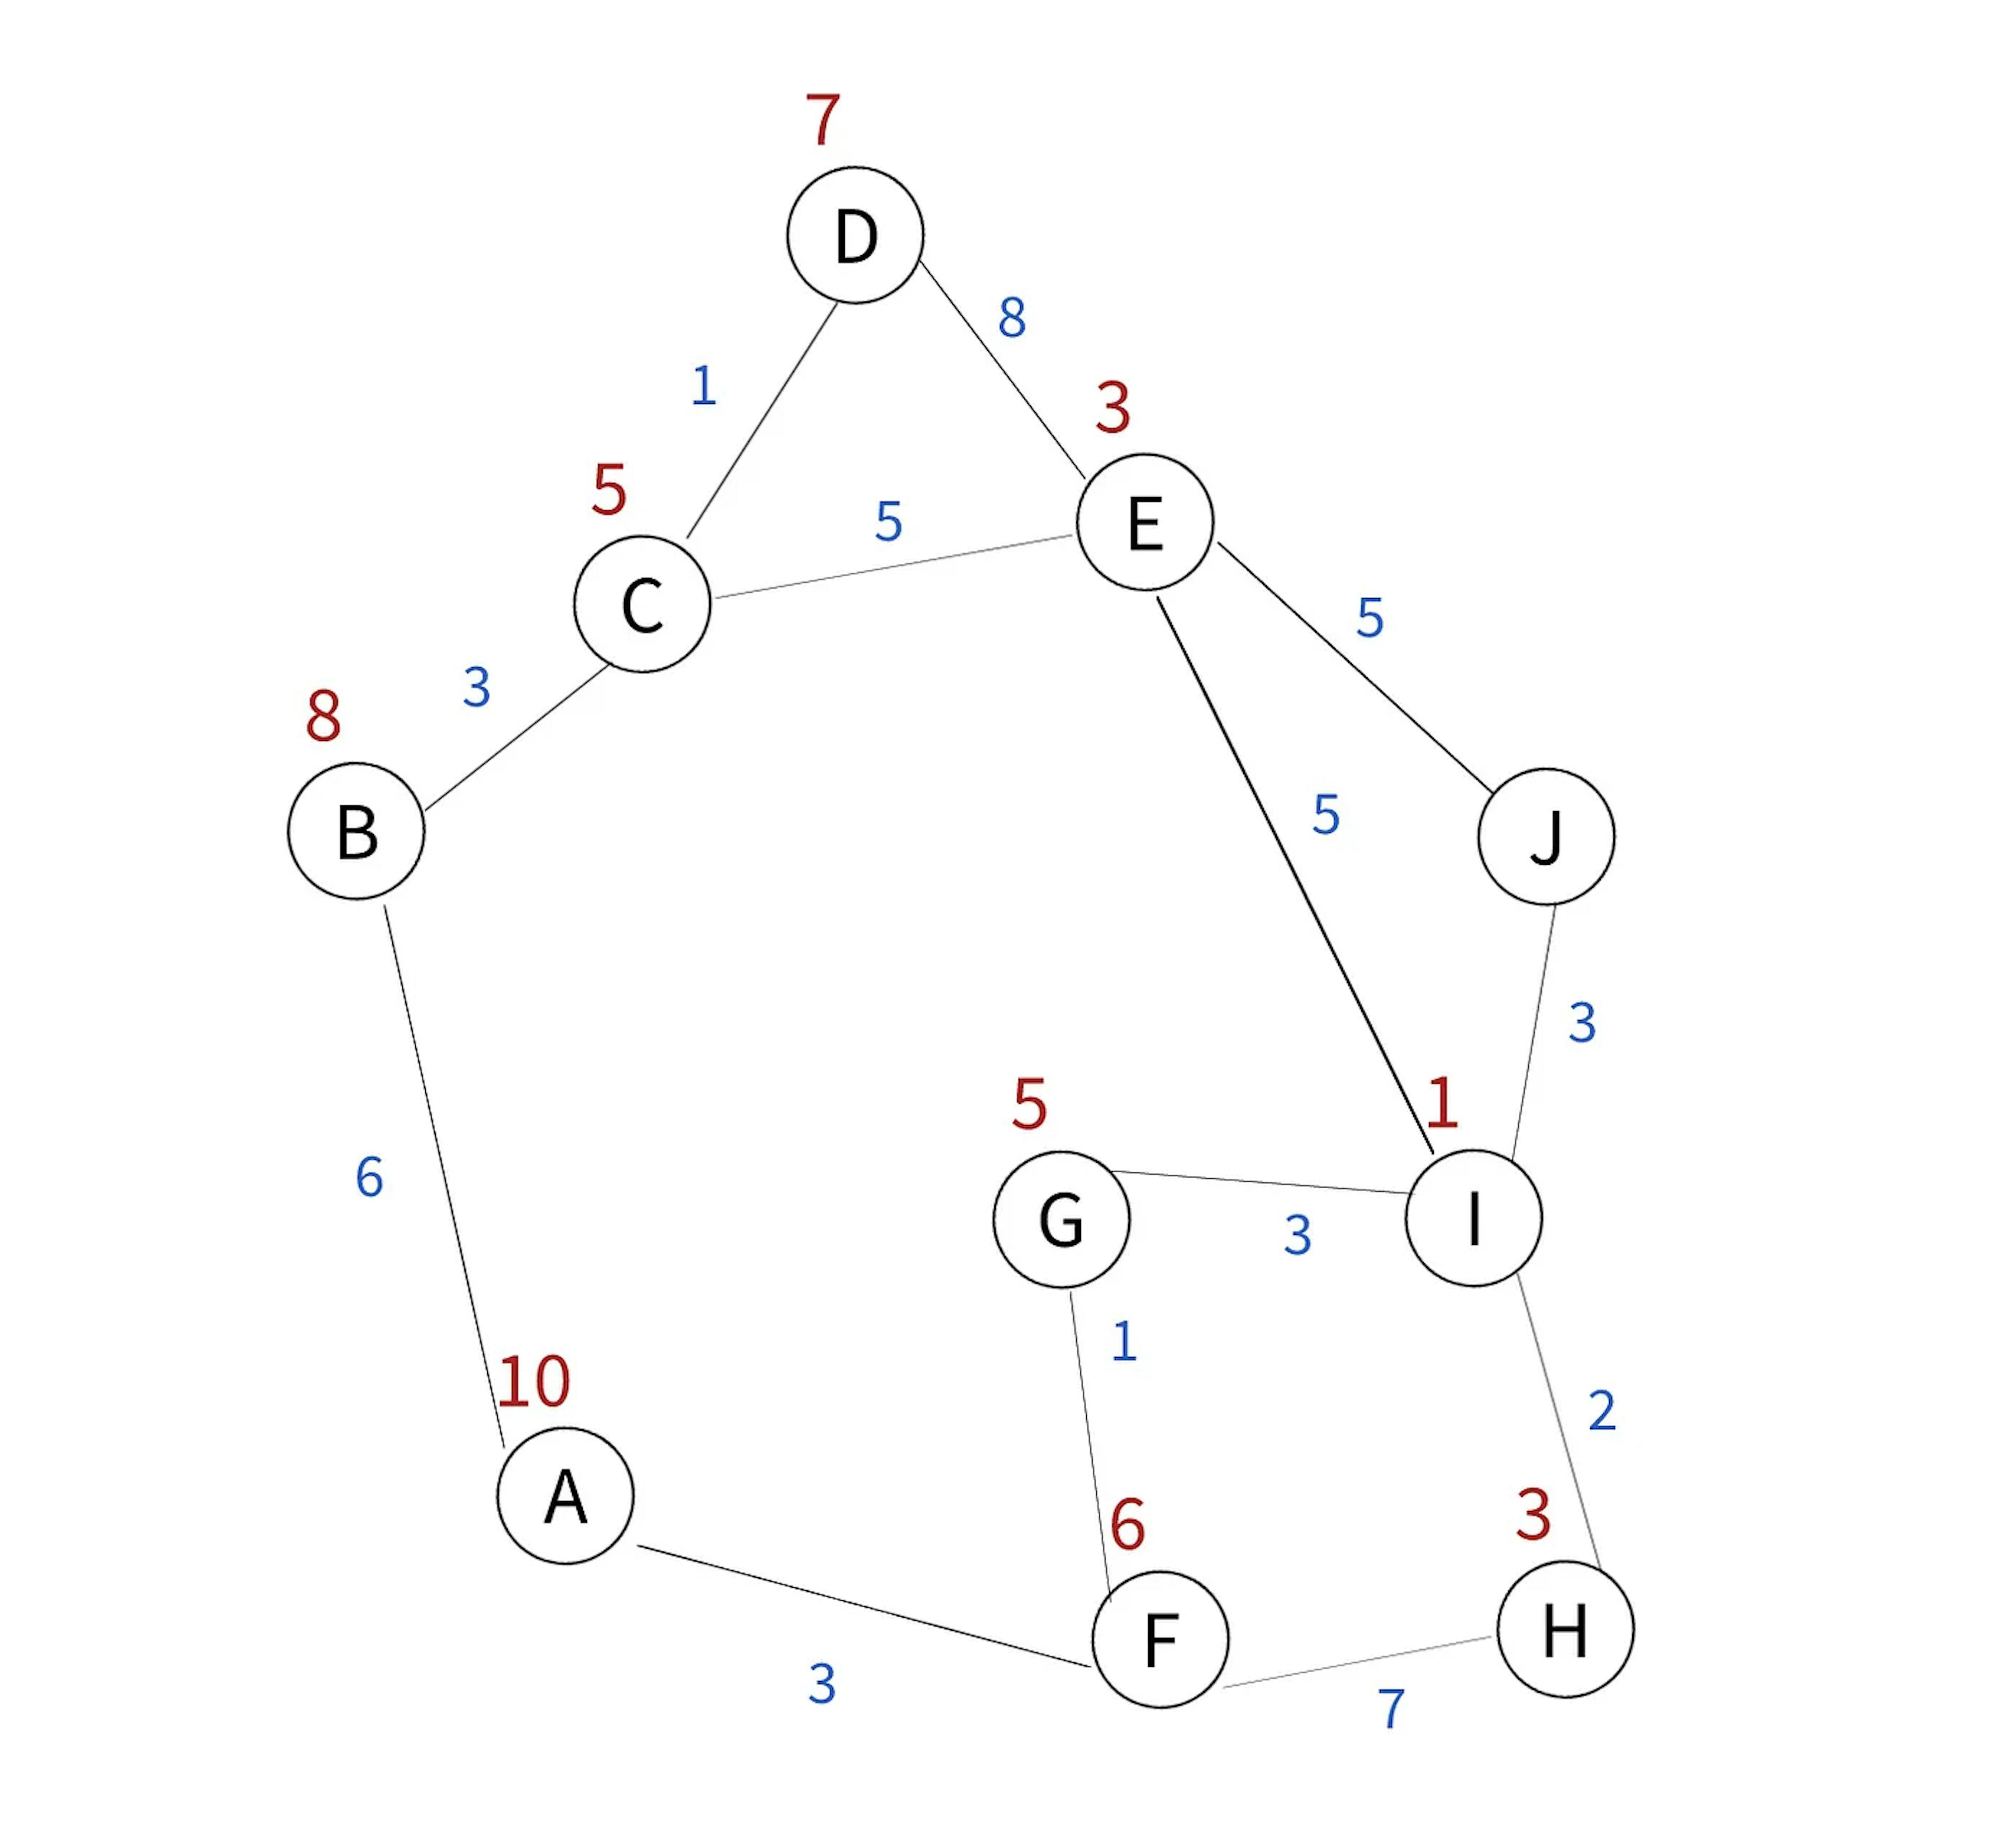 Figure 3. Sample route v2